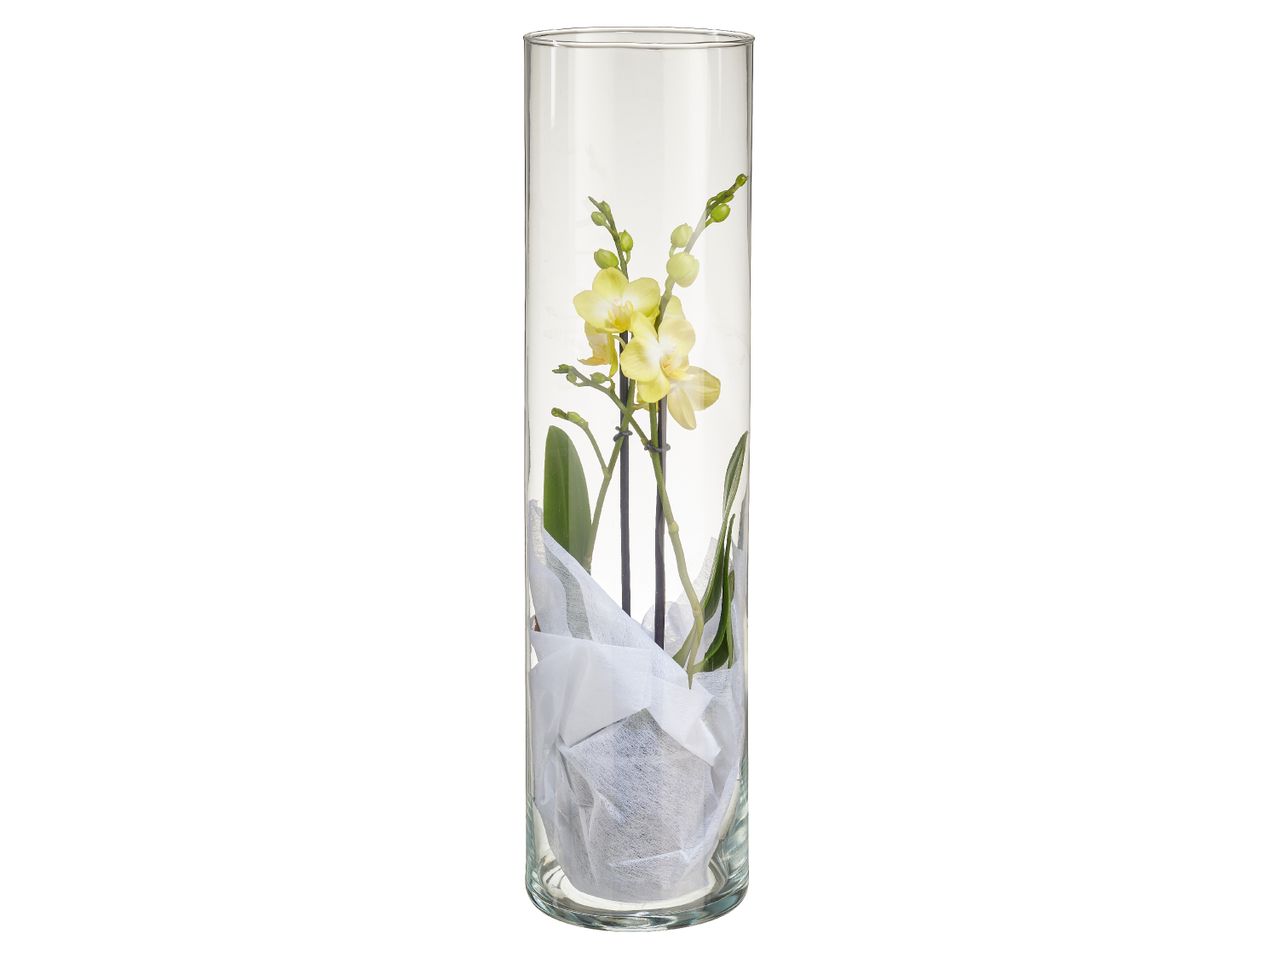 Aller en mode plein écran : Orchidée 2 tiges en vase - Image 1